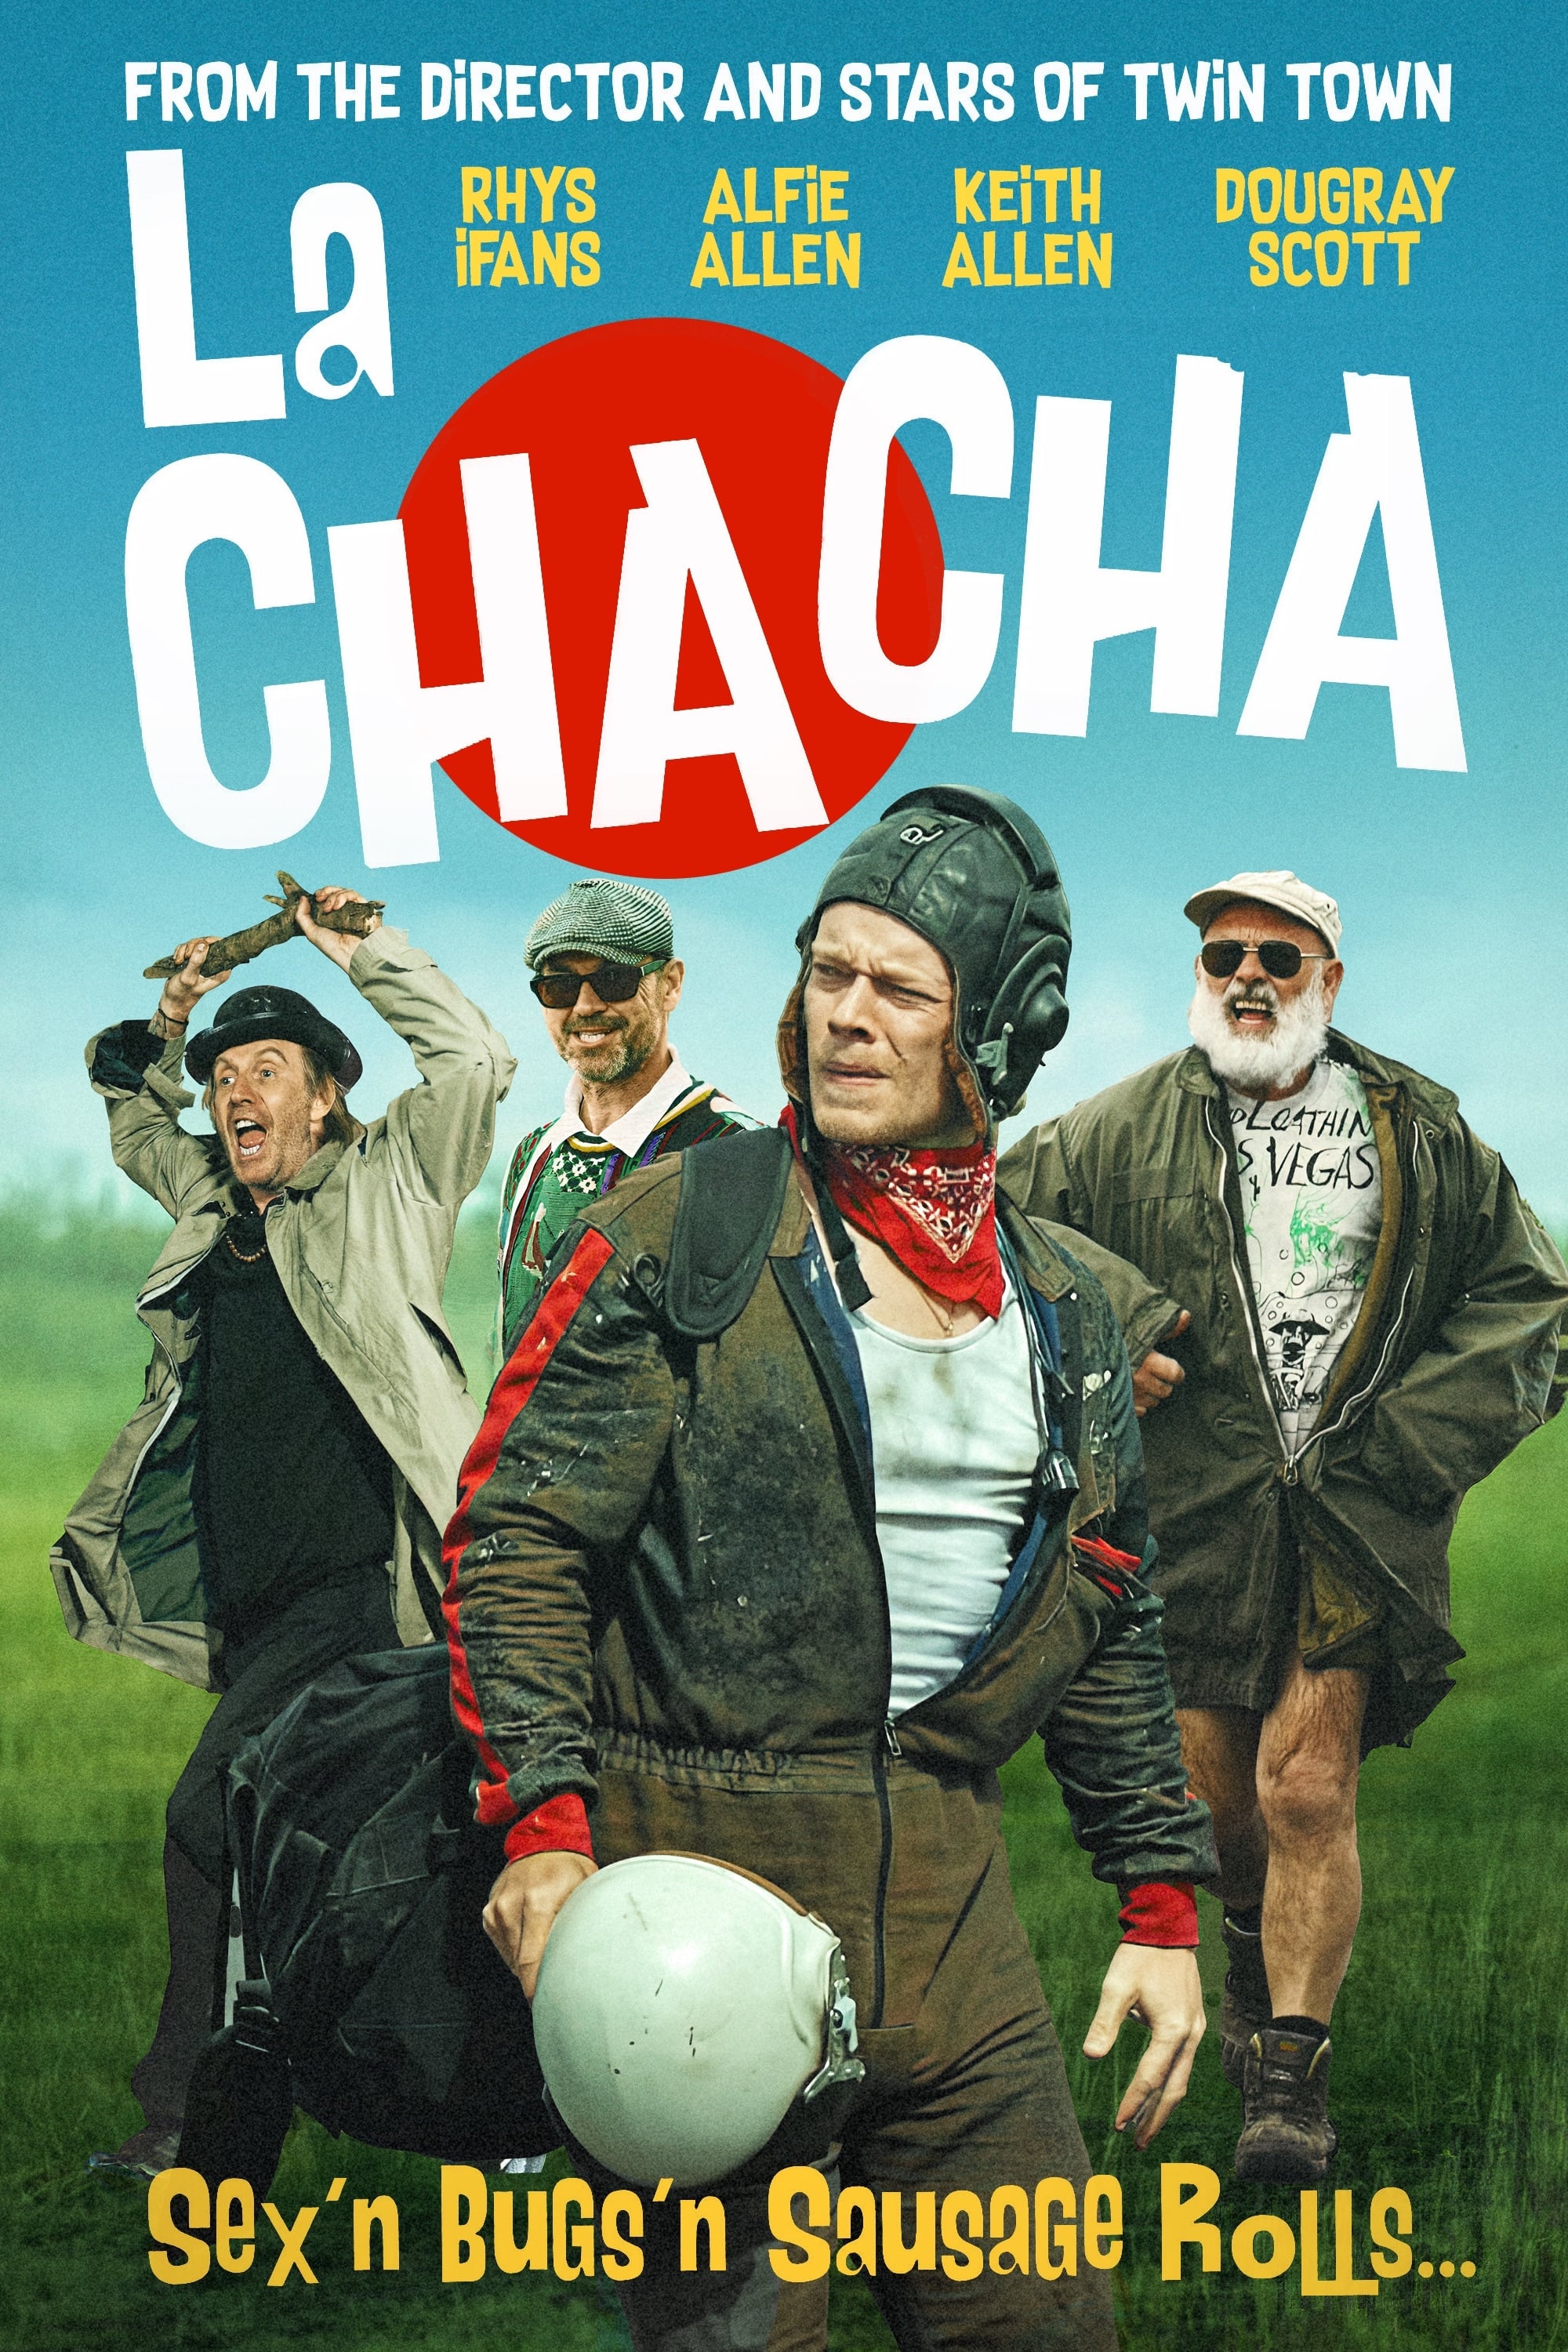 La Cha Cha film